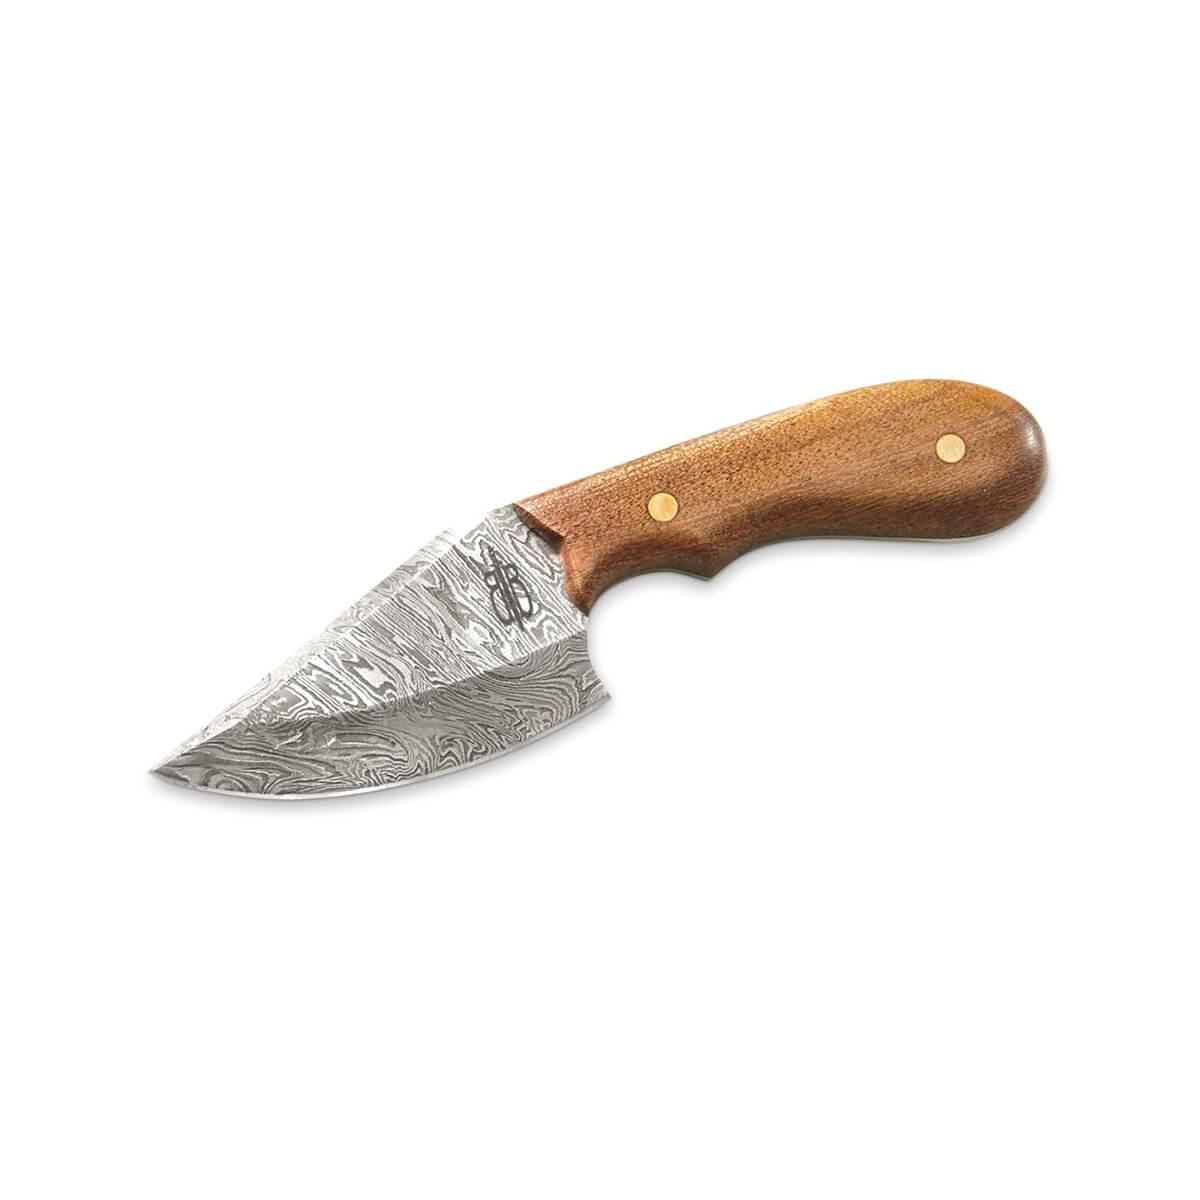  Wild Skinner Knife